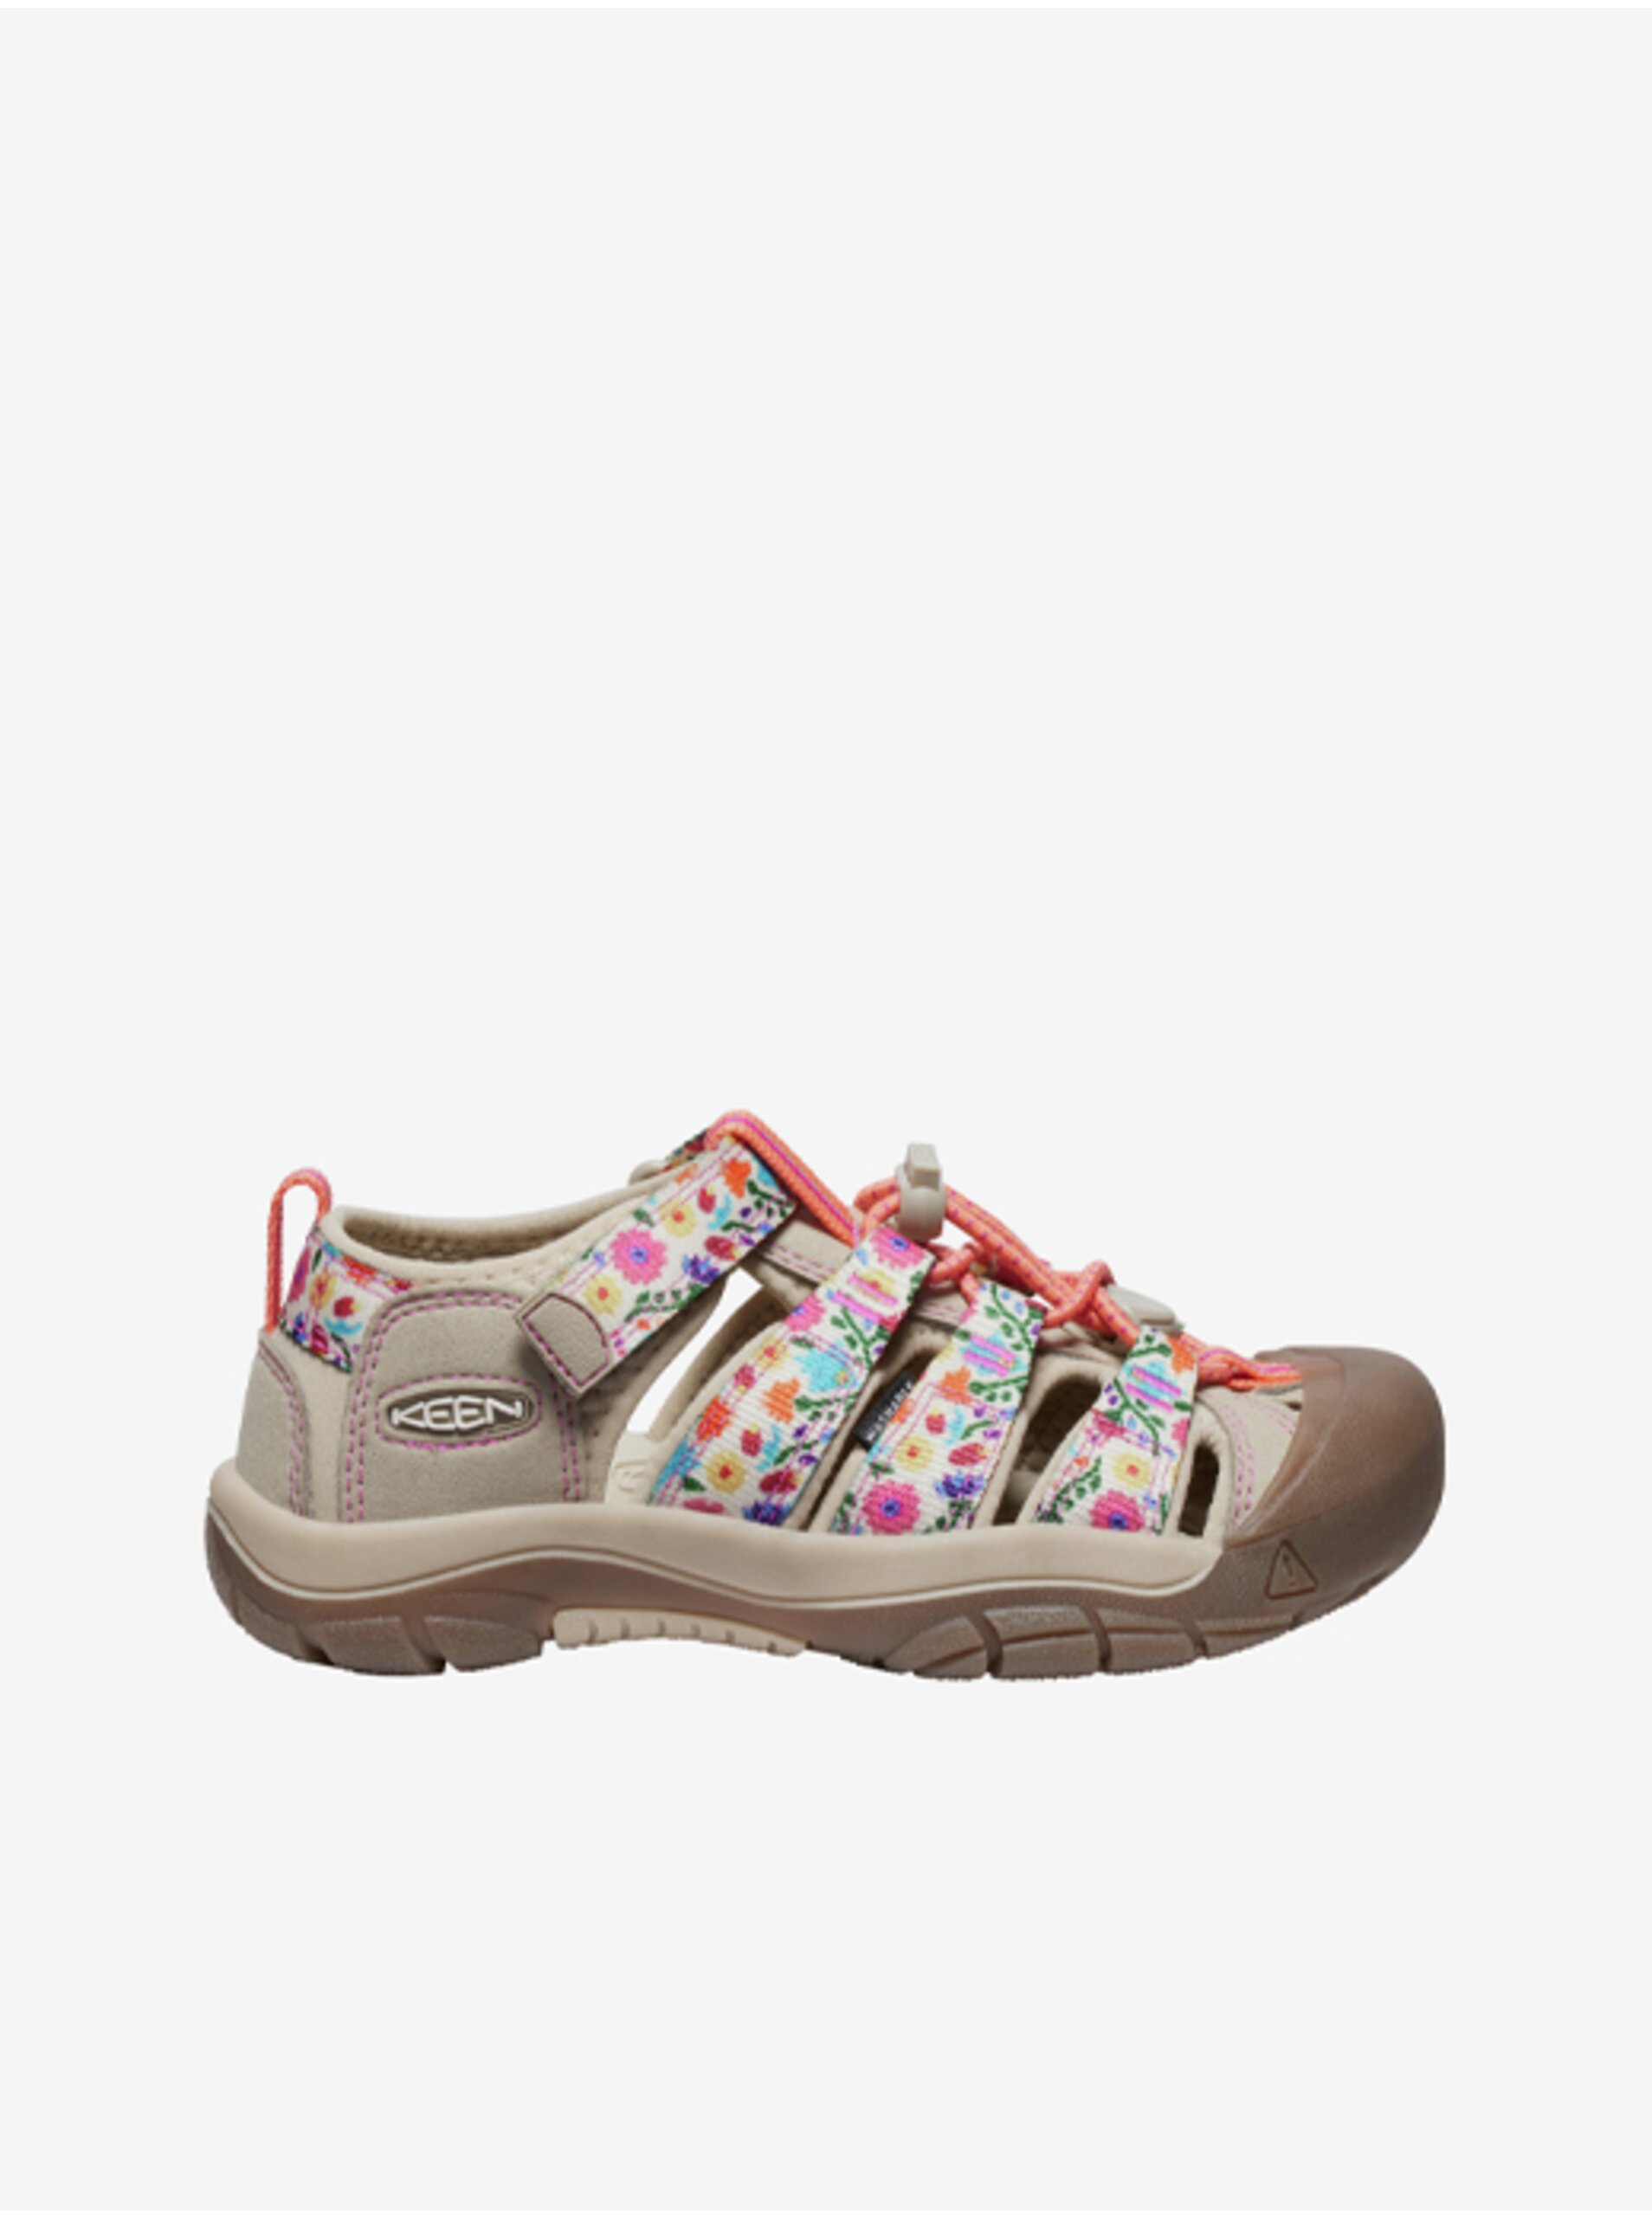 Levně Béžové holčičí outdoorové sandály Keen Keen Newport H2